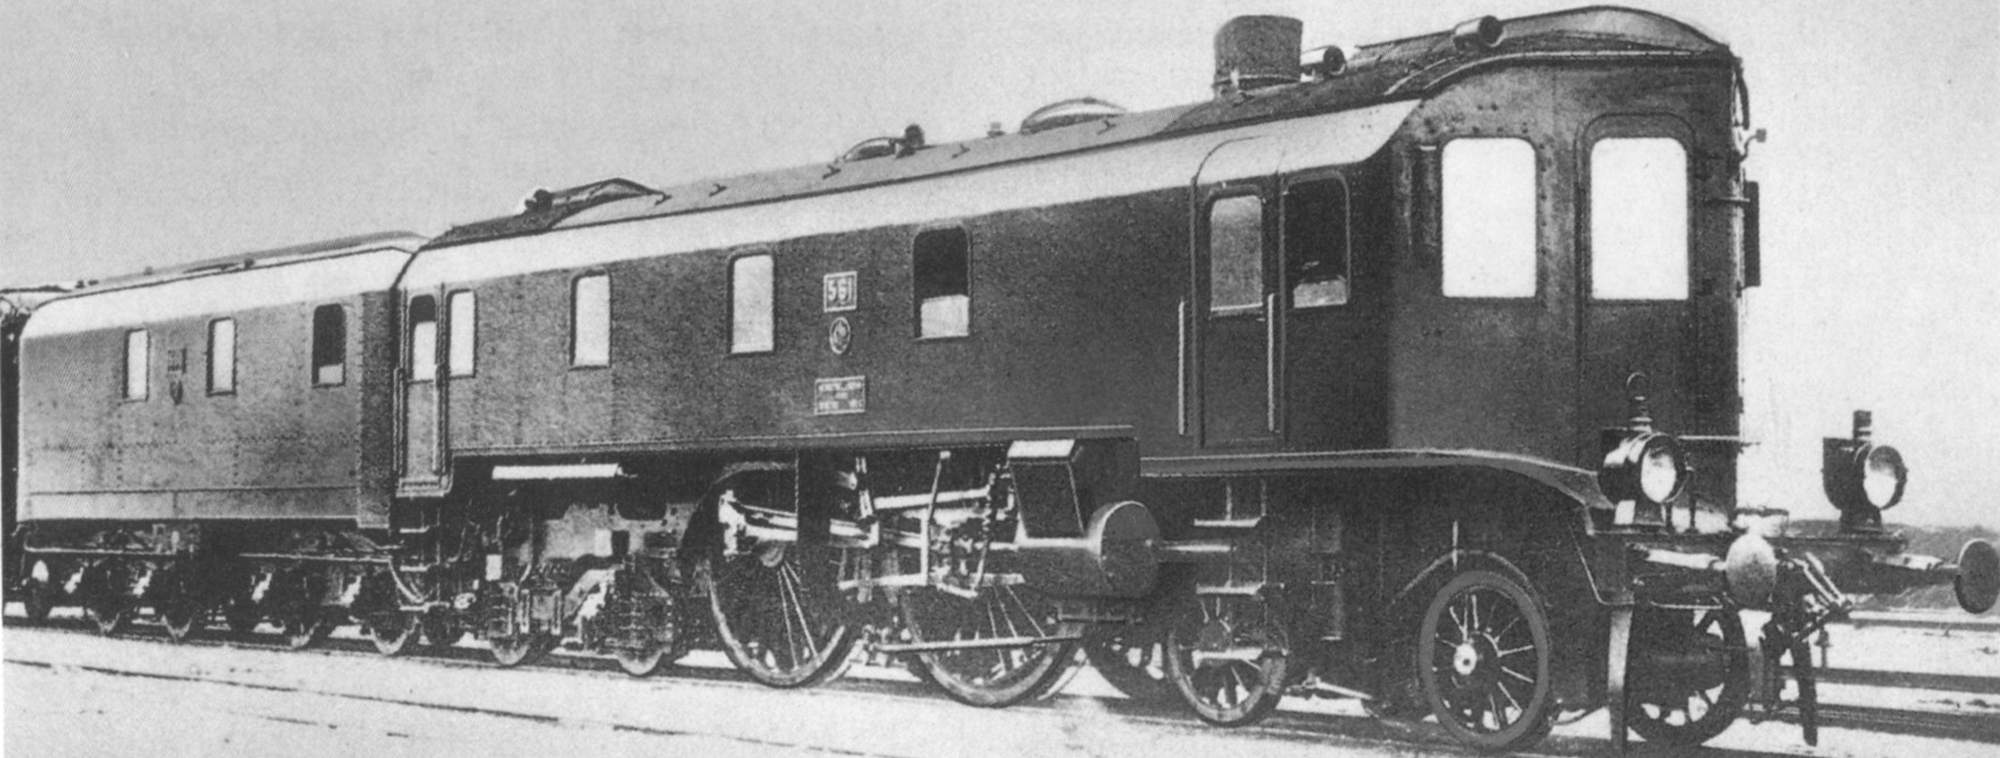 Altona 561, the streamlined vehicle